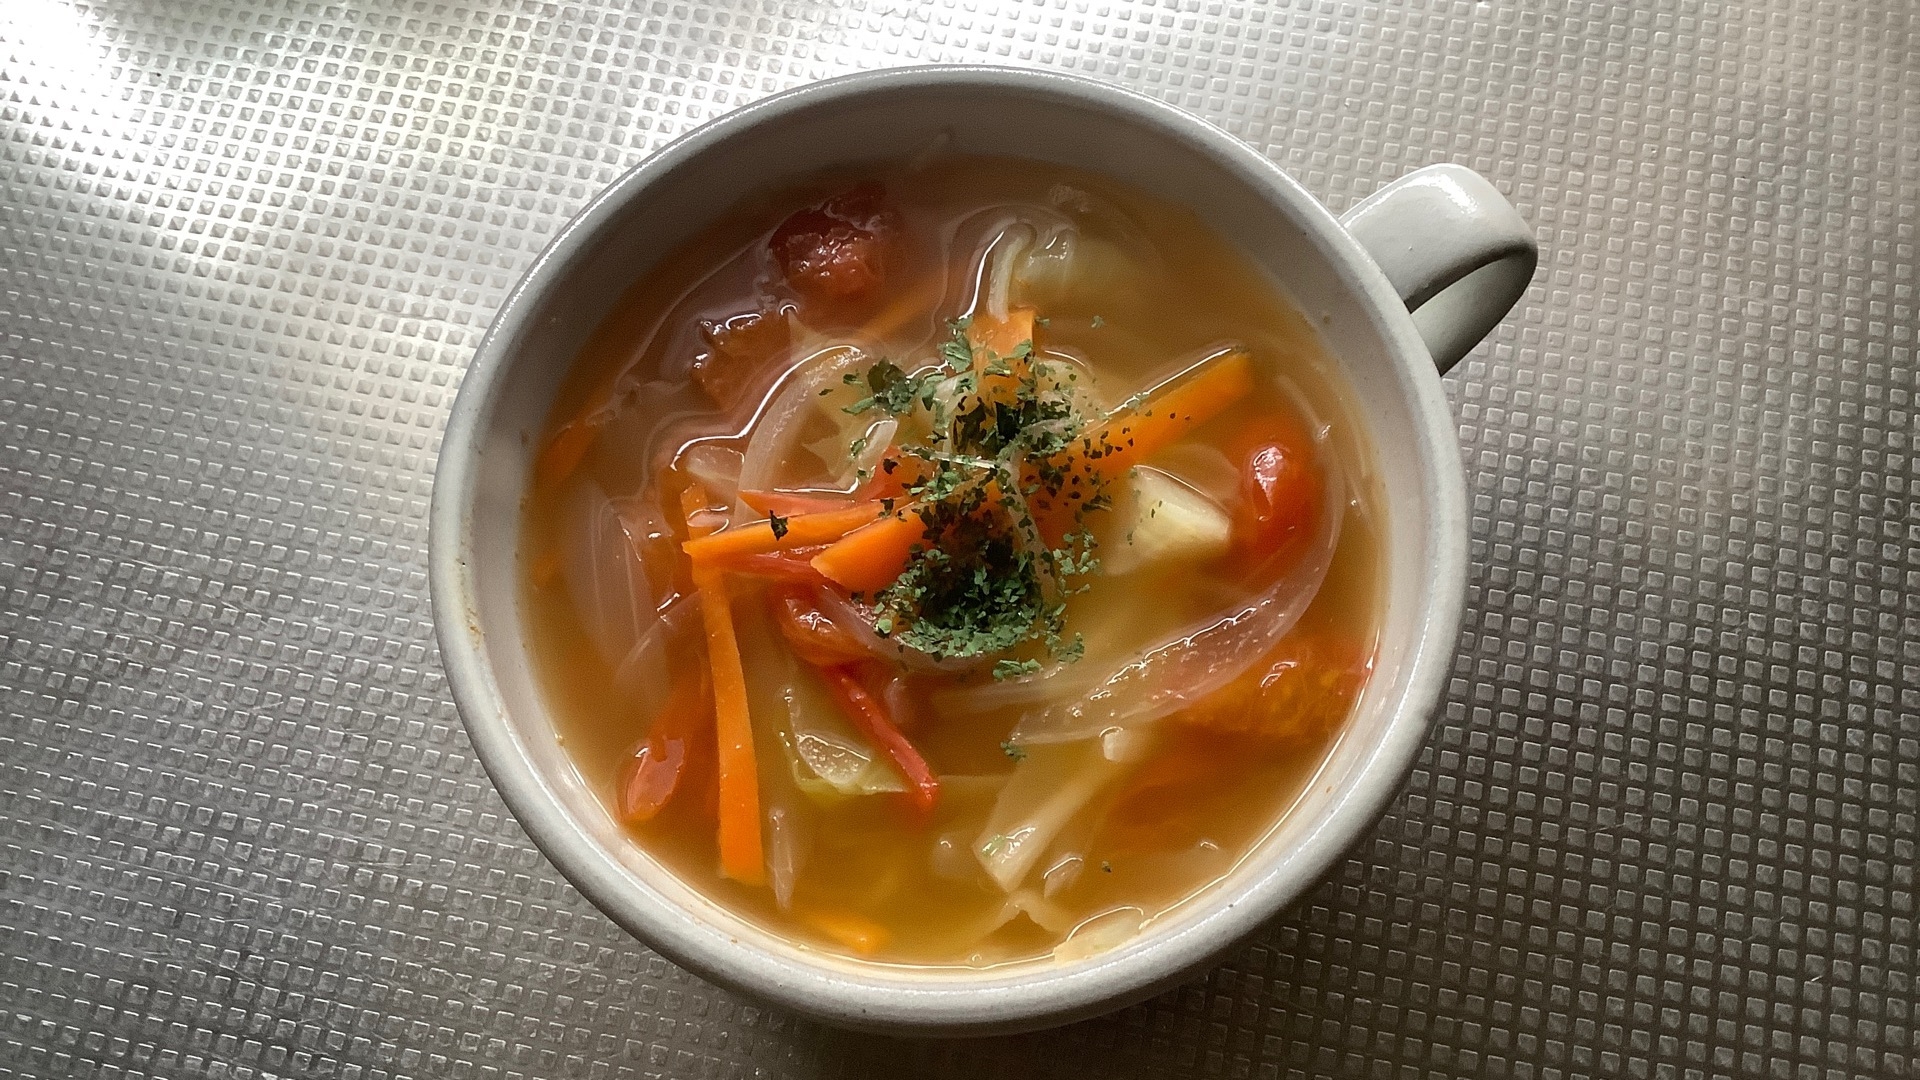 ミニトマト野菜スープ レシピ 作り方 By Tonton22 楽天レシピ